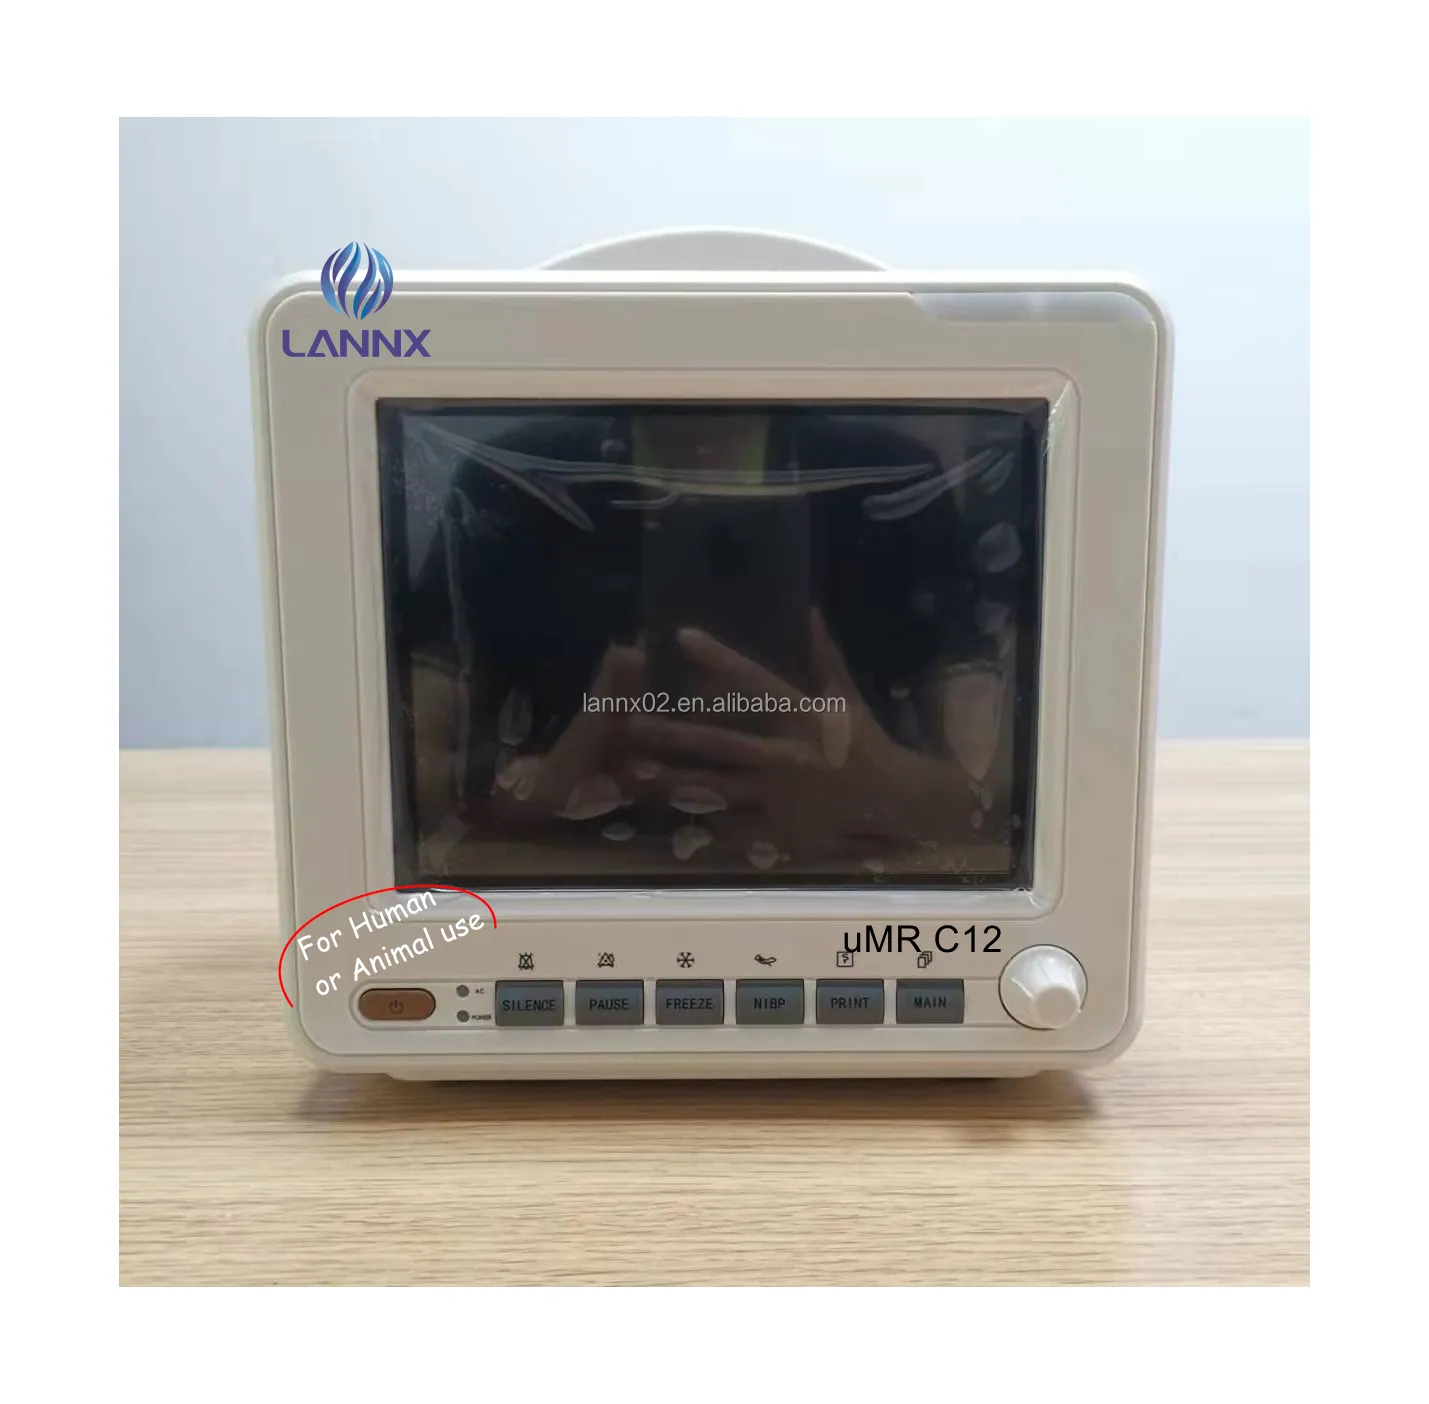 LANNX uMR C12 produsen 3 Parameter Signos Vitales Monitor portabel mesin ECG Rumah Sakit perlengkapan Monitor samping tempat tidur